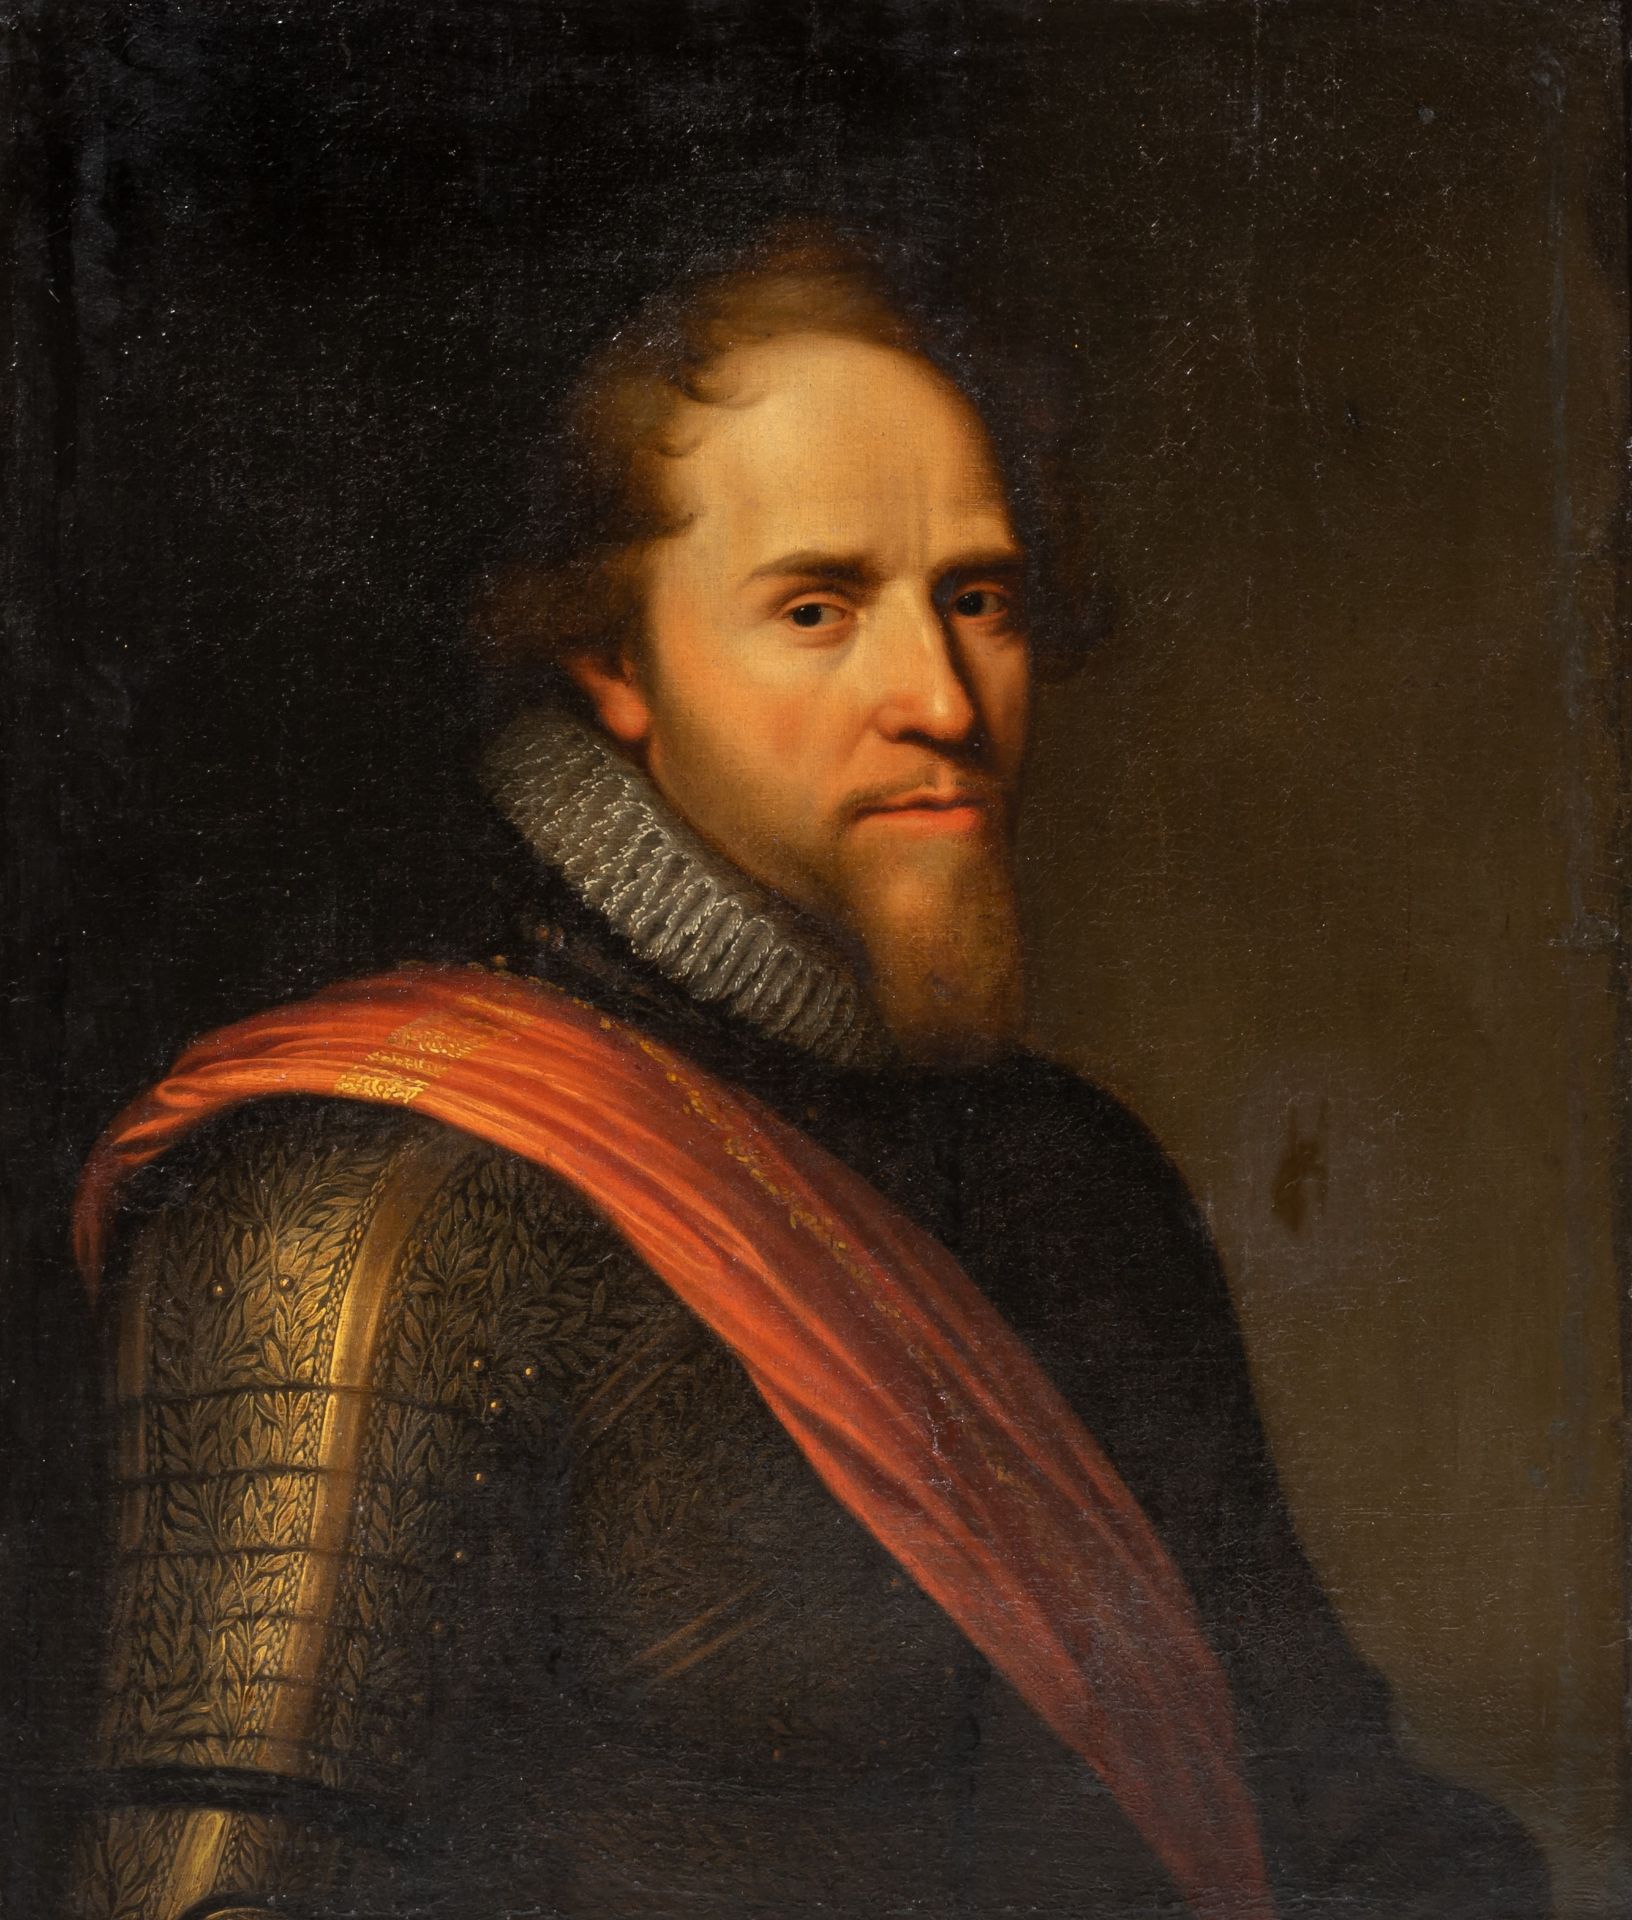 Attrib. to Gerrit van Honthorst (1592-1656), portrait of Maurice of Nassau Prince of Orange, oil on